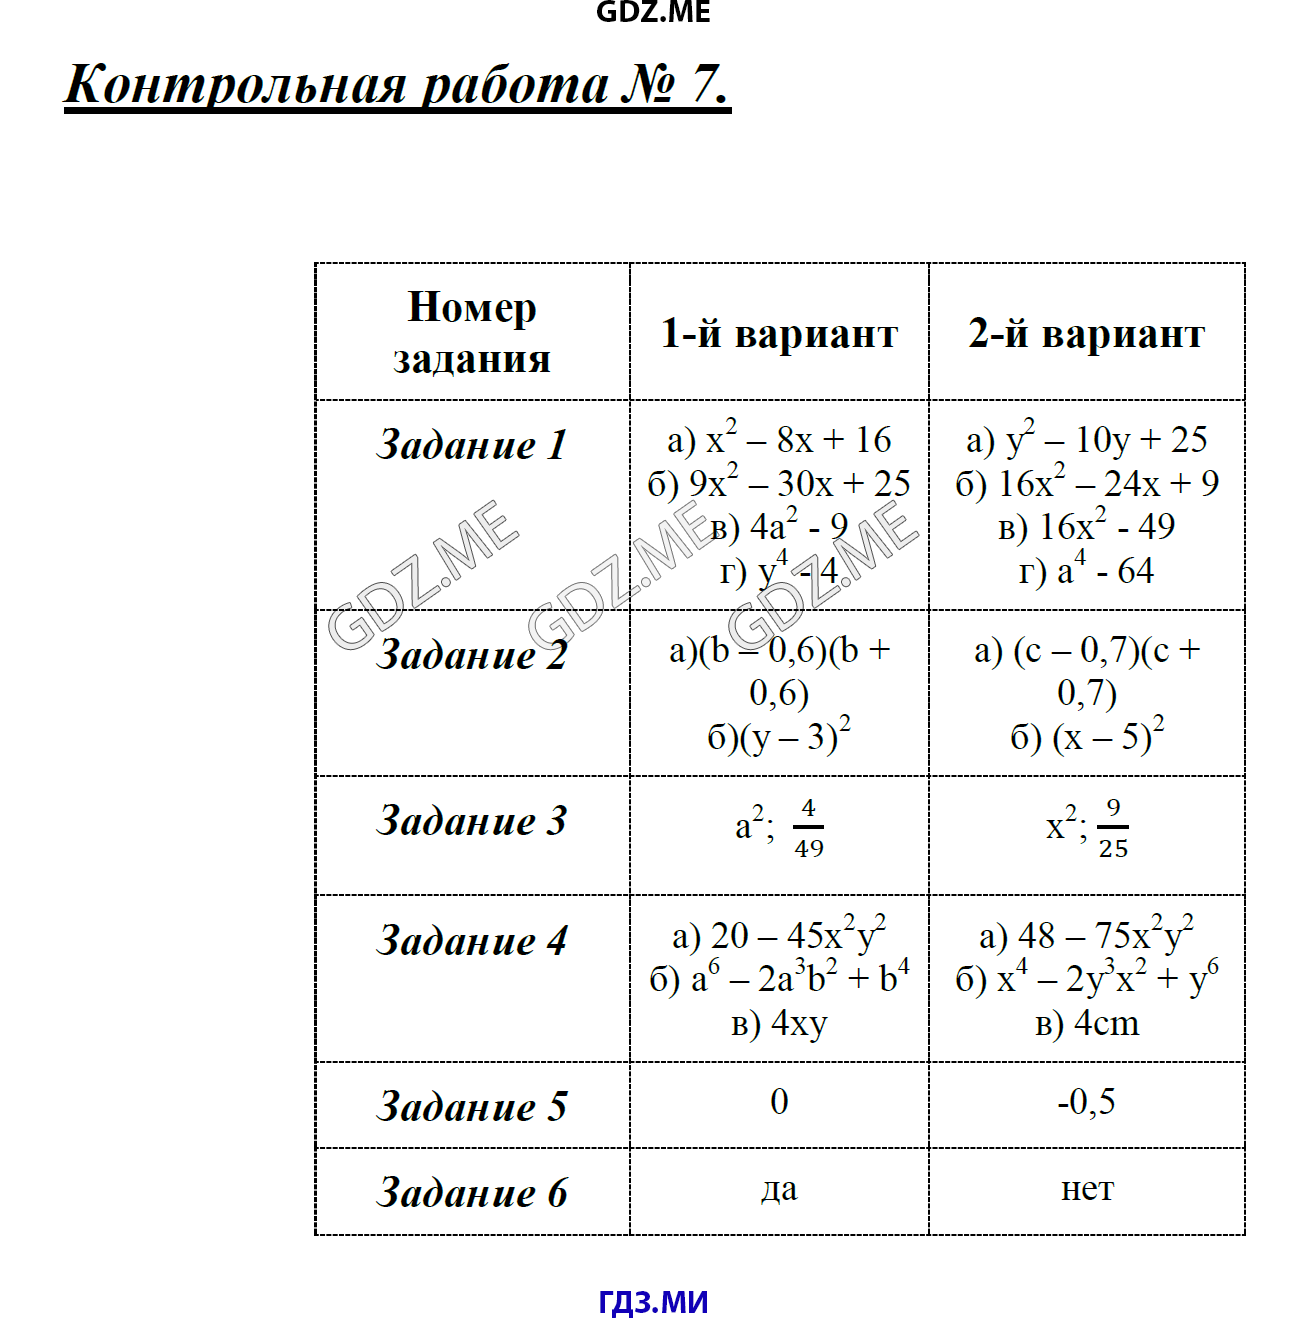 Решение контрольных работ дудницын кронгауз 10 класс по алгебре